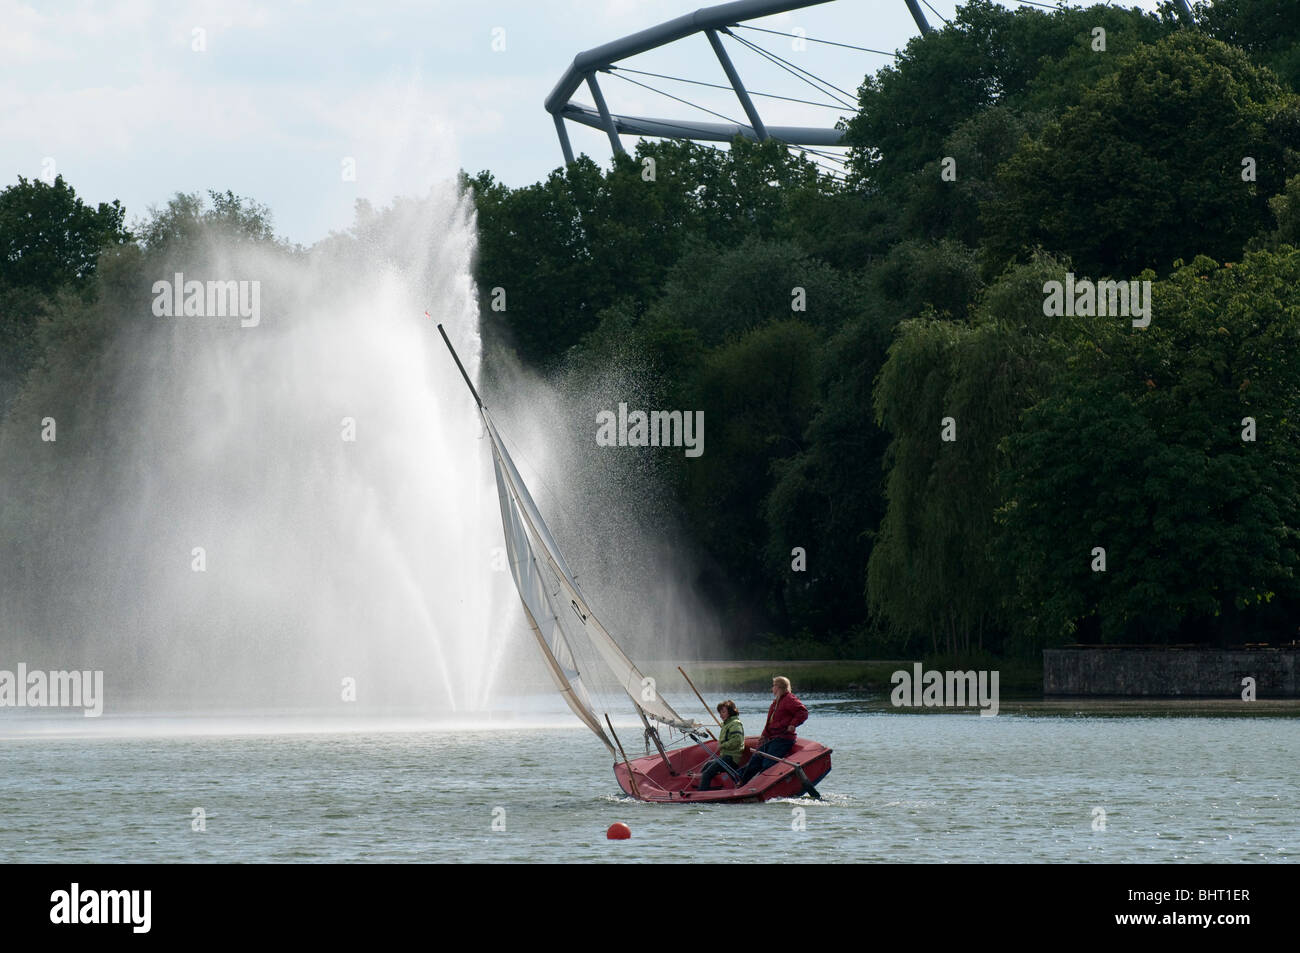 Segelboot und Fontaene auf dem Maschsee, Hannover, Niedersachsen, Deutschland | Hannover, Masch Lake, Germany Stock Photo